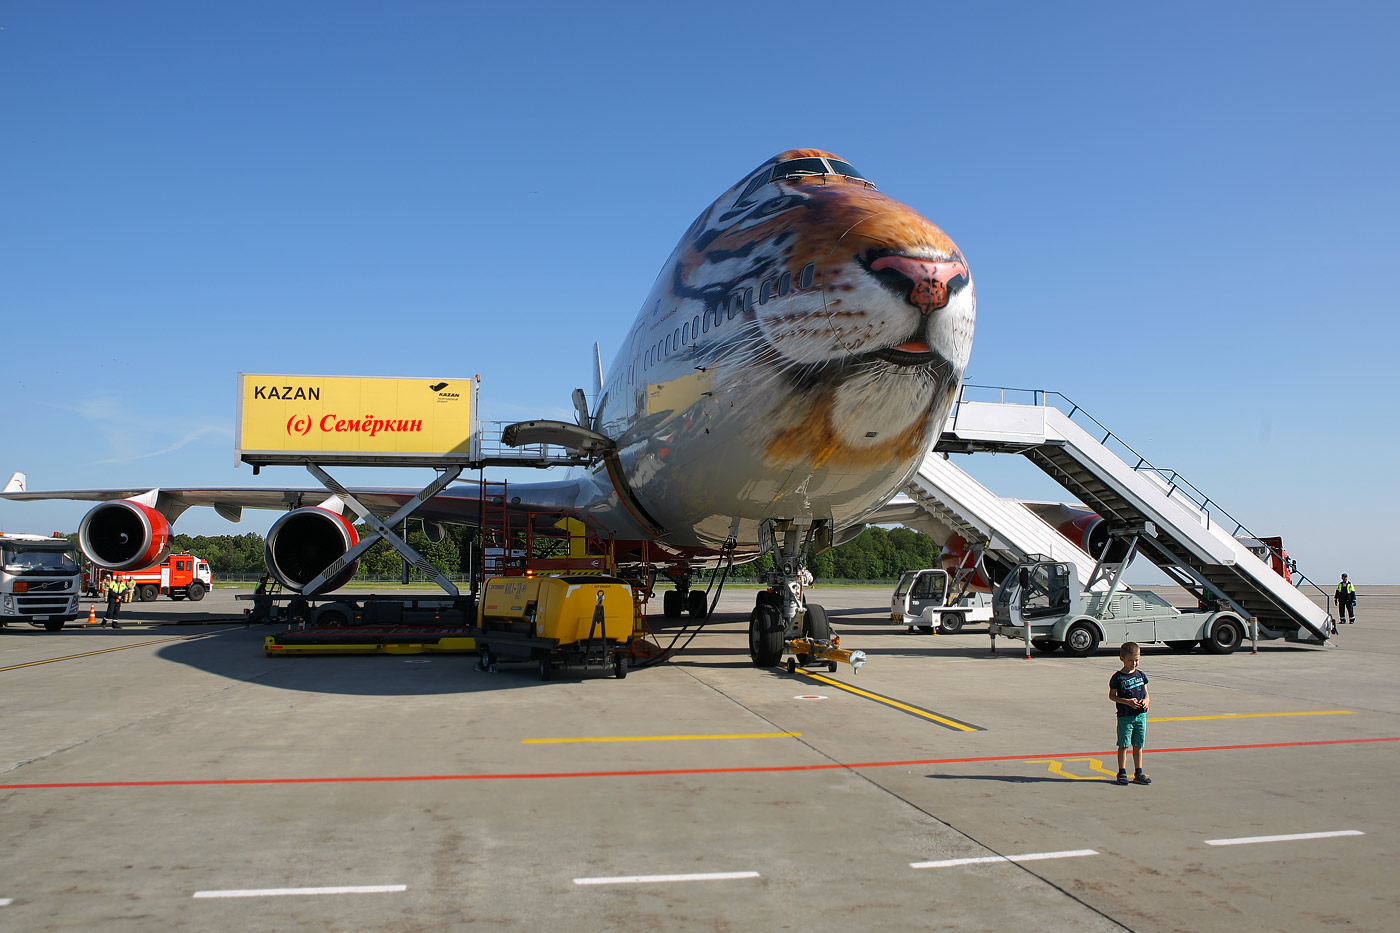 Тигролёт Boeing 747 авиакомпании Россия в казанском аэропорту